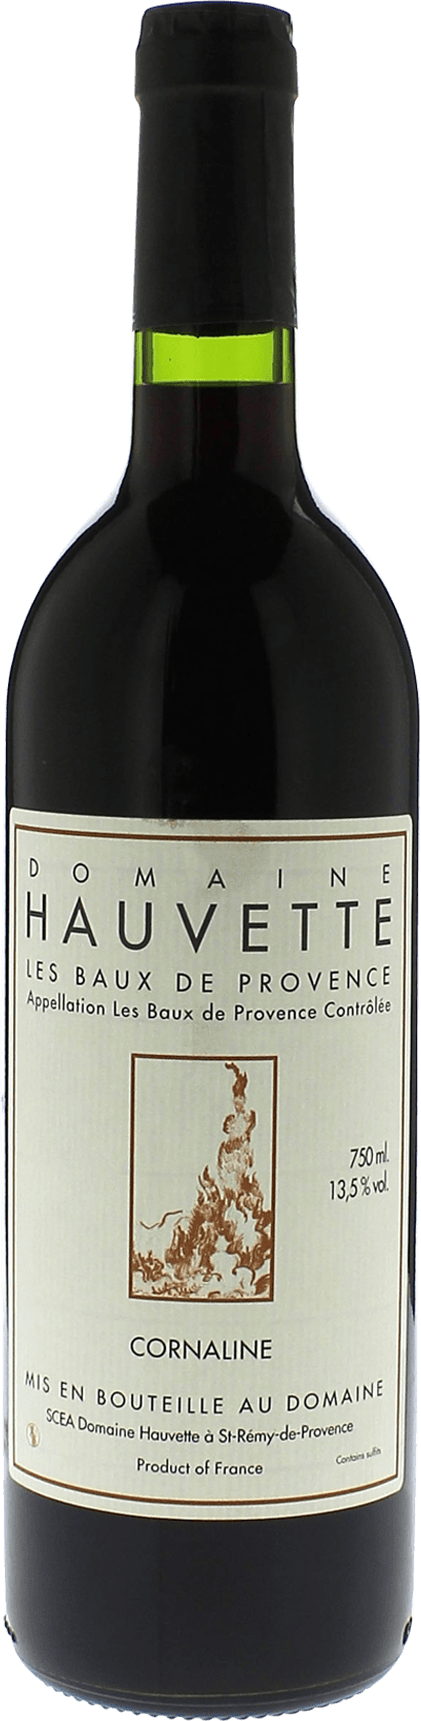 Domaine hauvette cornaline 2014  Baux de Provence AOP, Provence